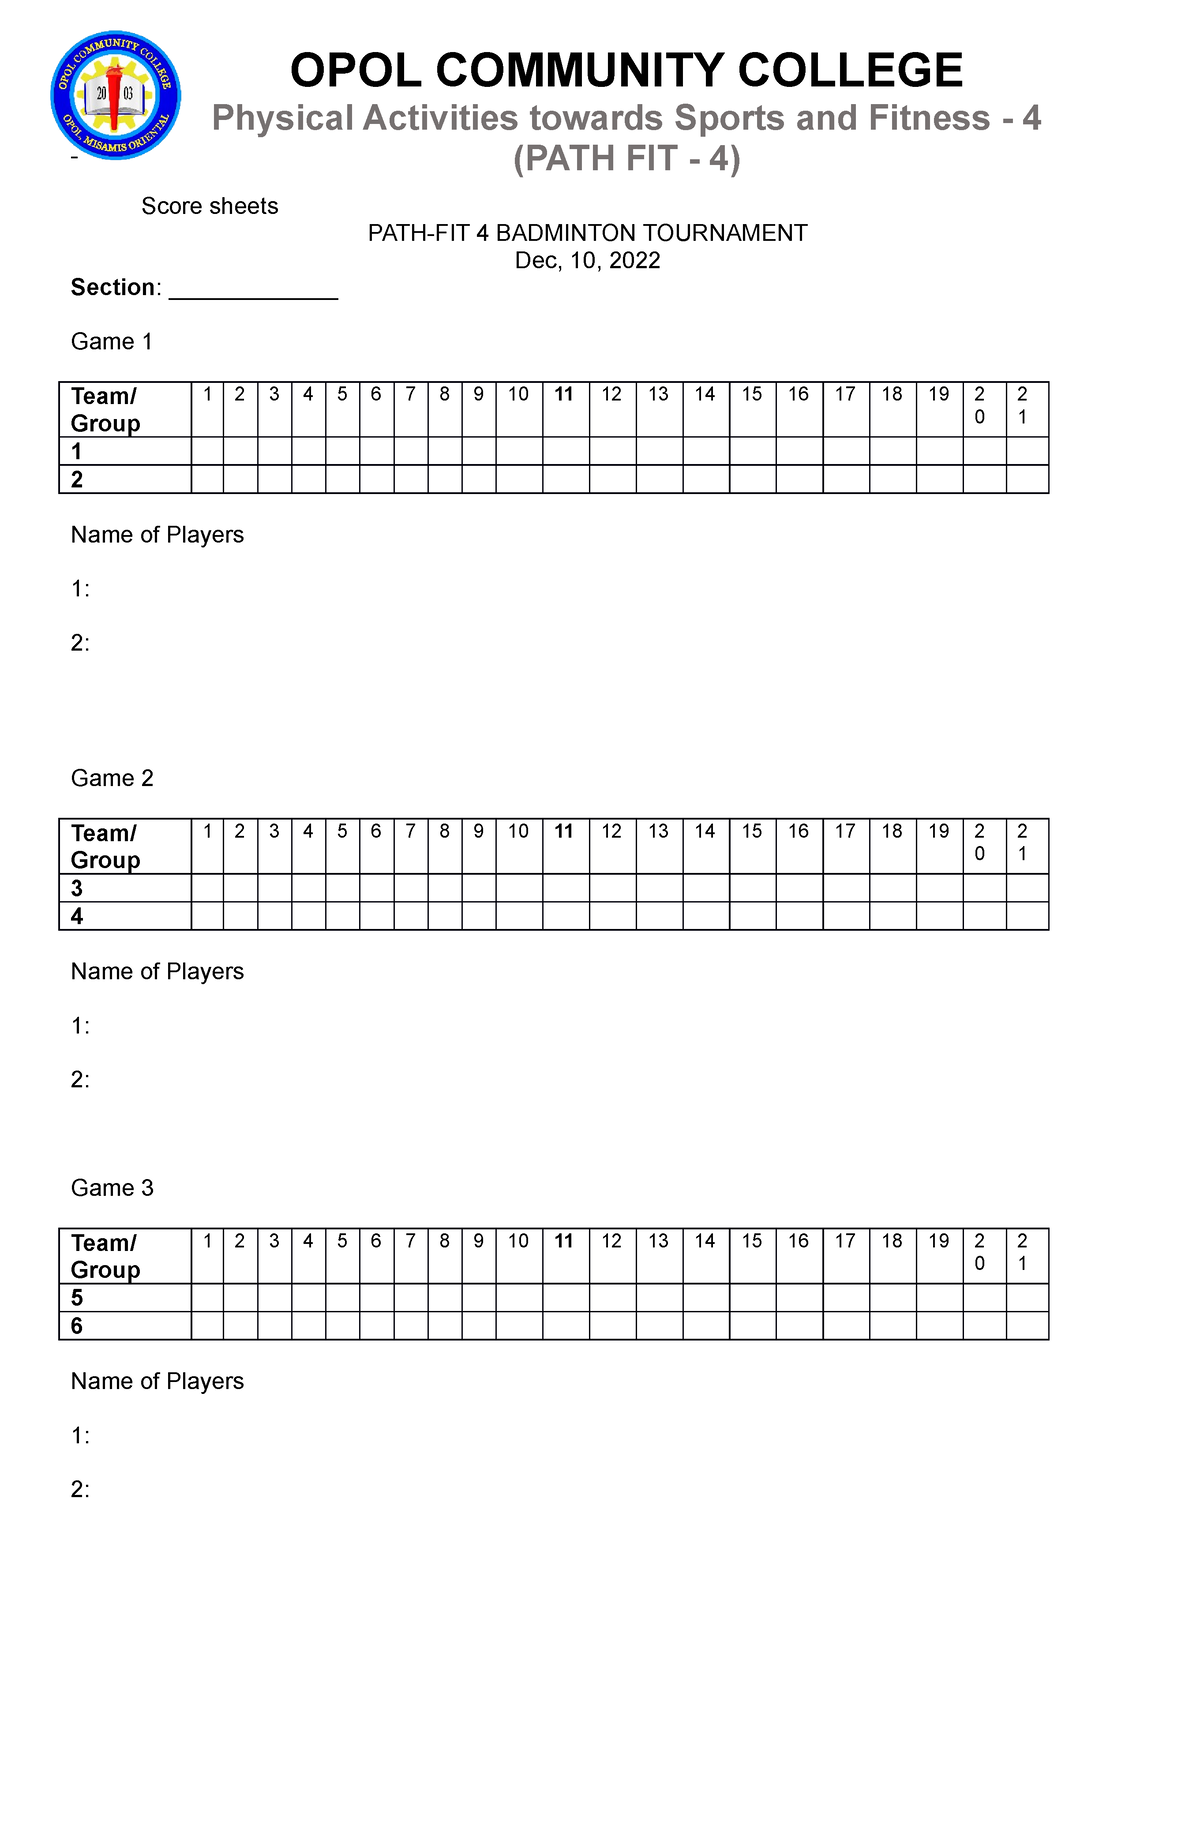 Badminton Tournament Score sheets -LAP 16 - Score sheets PATH-FIT 4 BADMINTON TOURNAMENT Dec, 10,